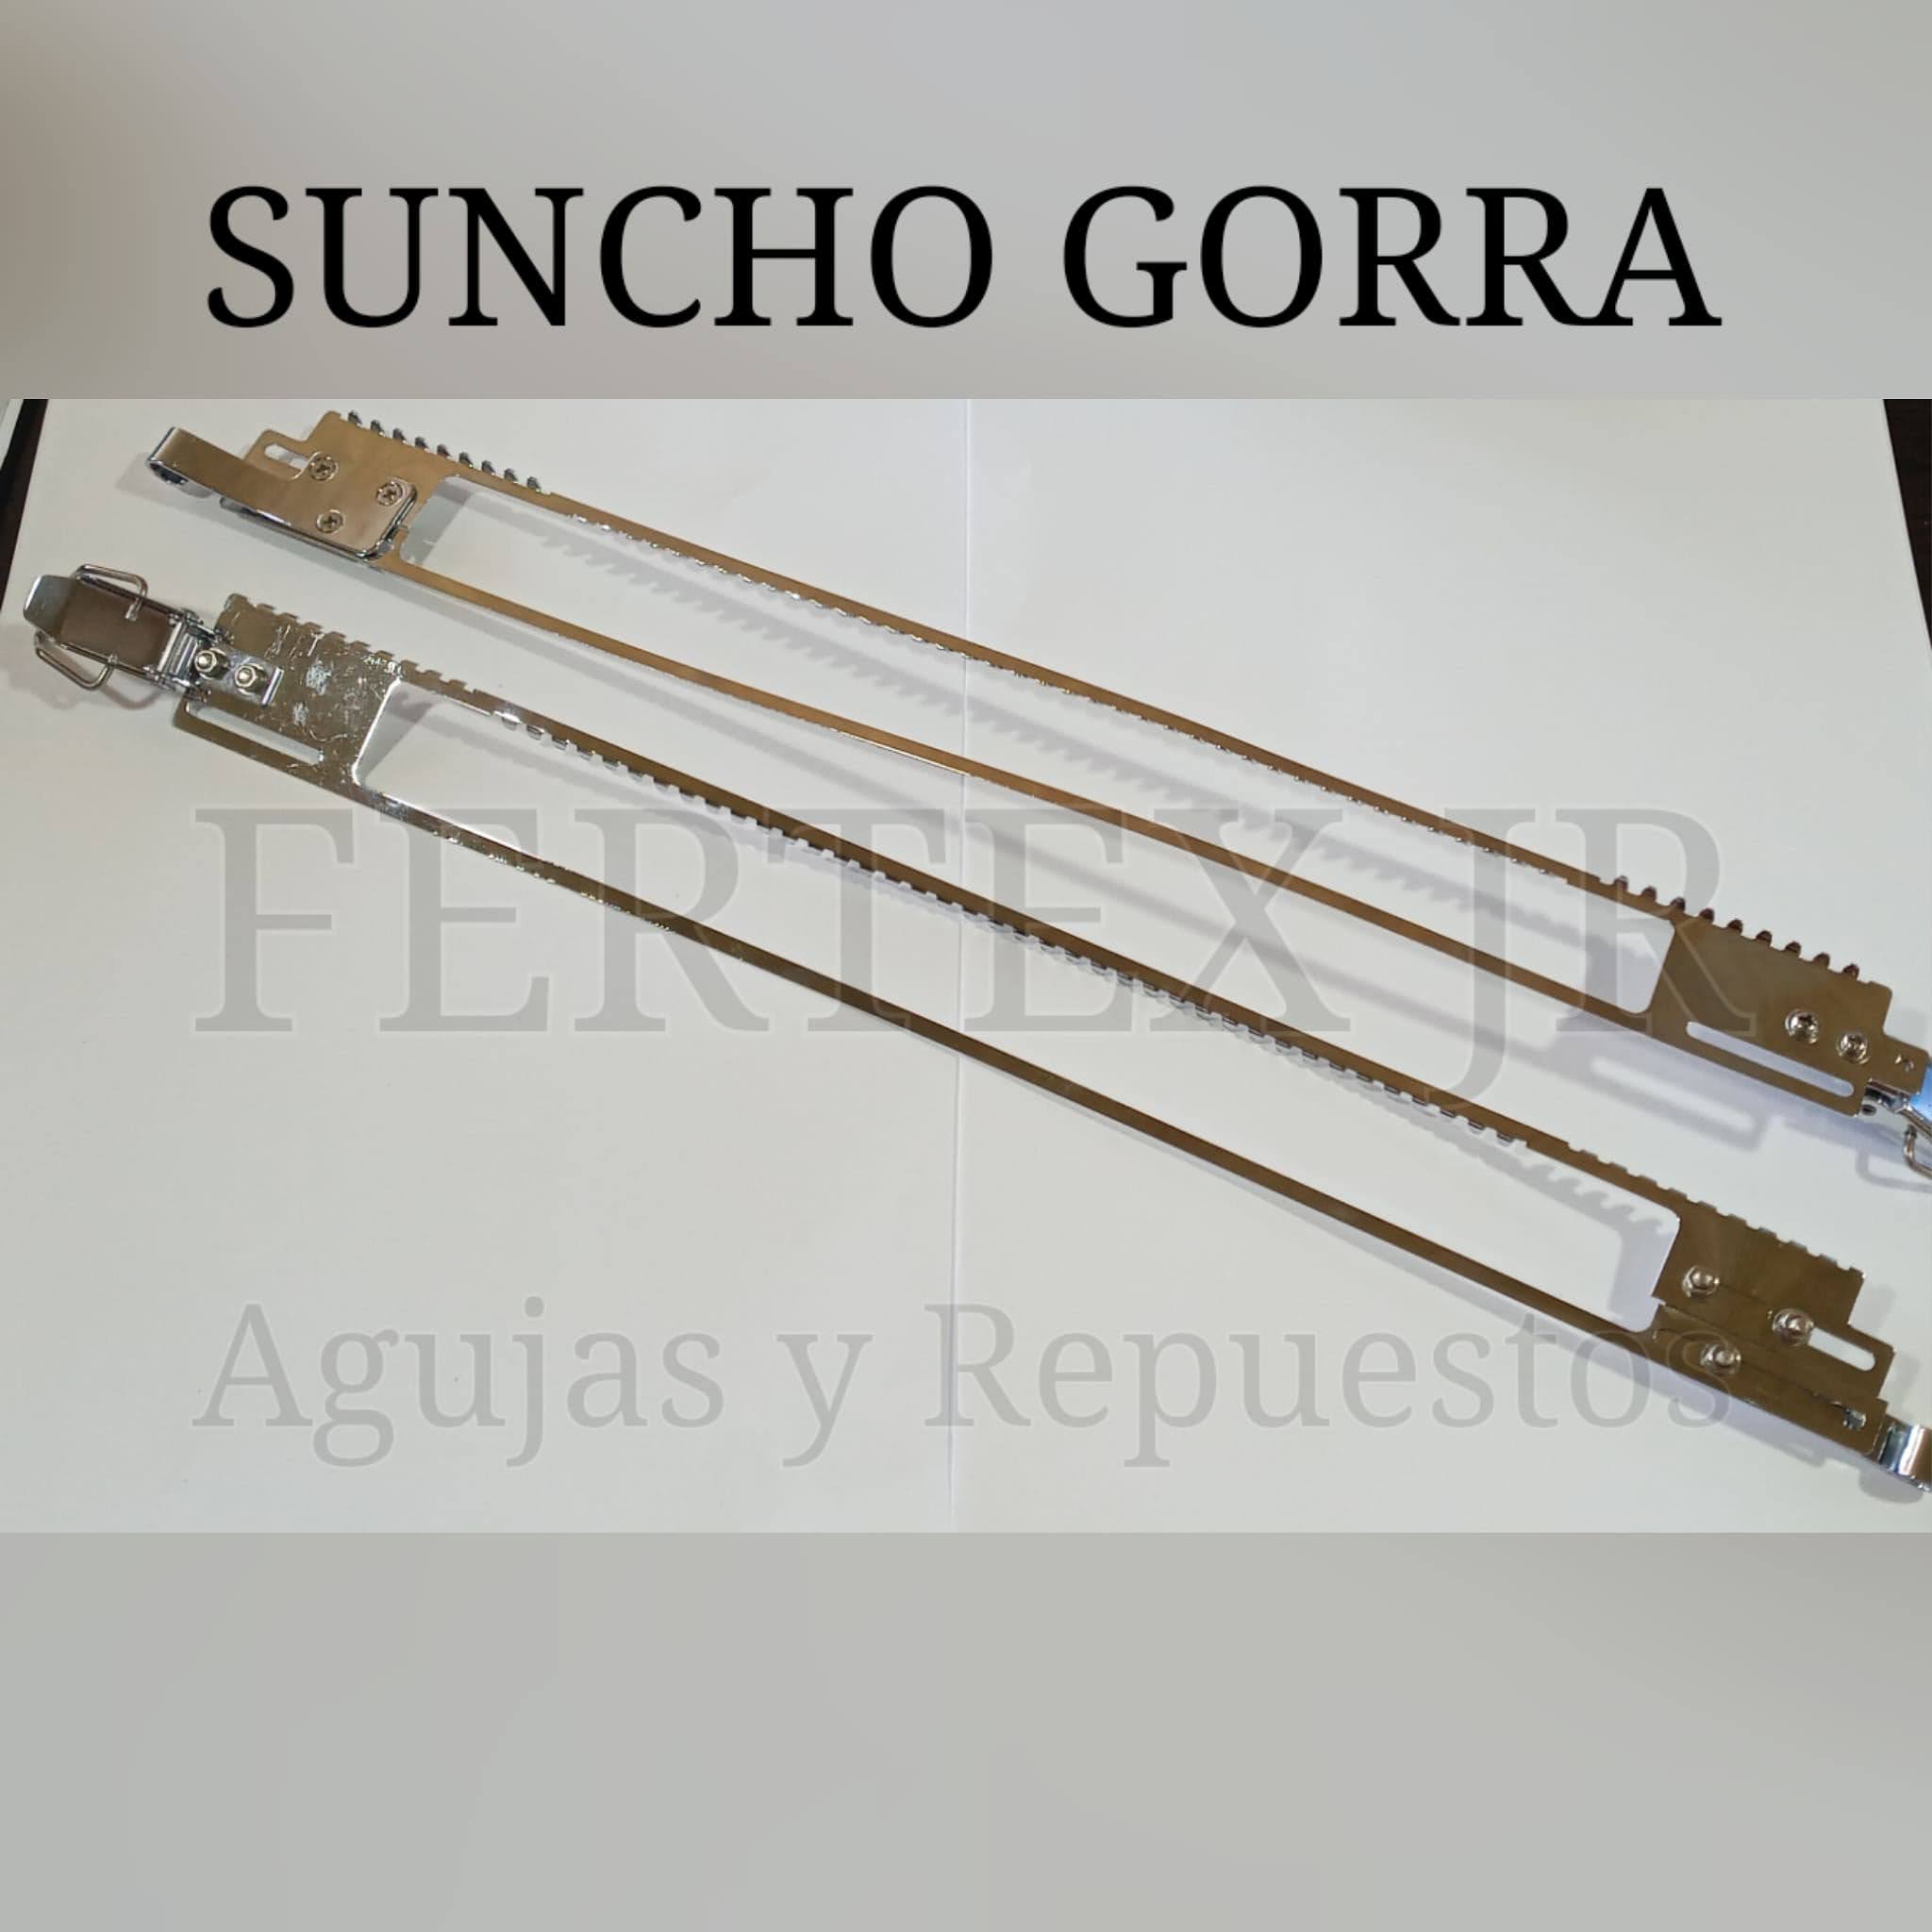 Suncho Gorra